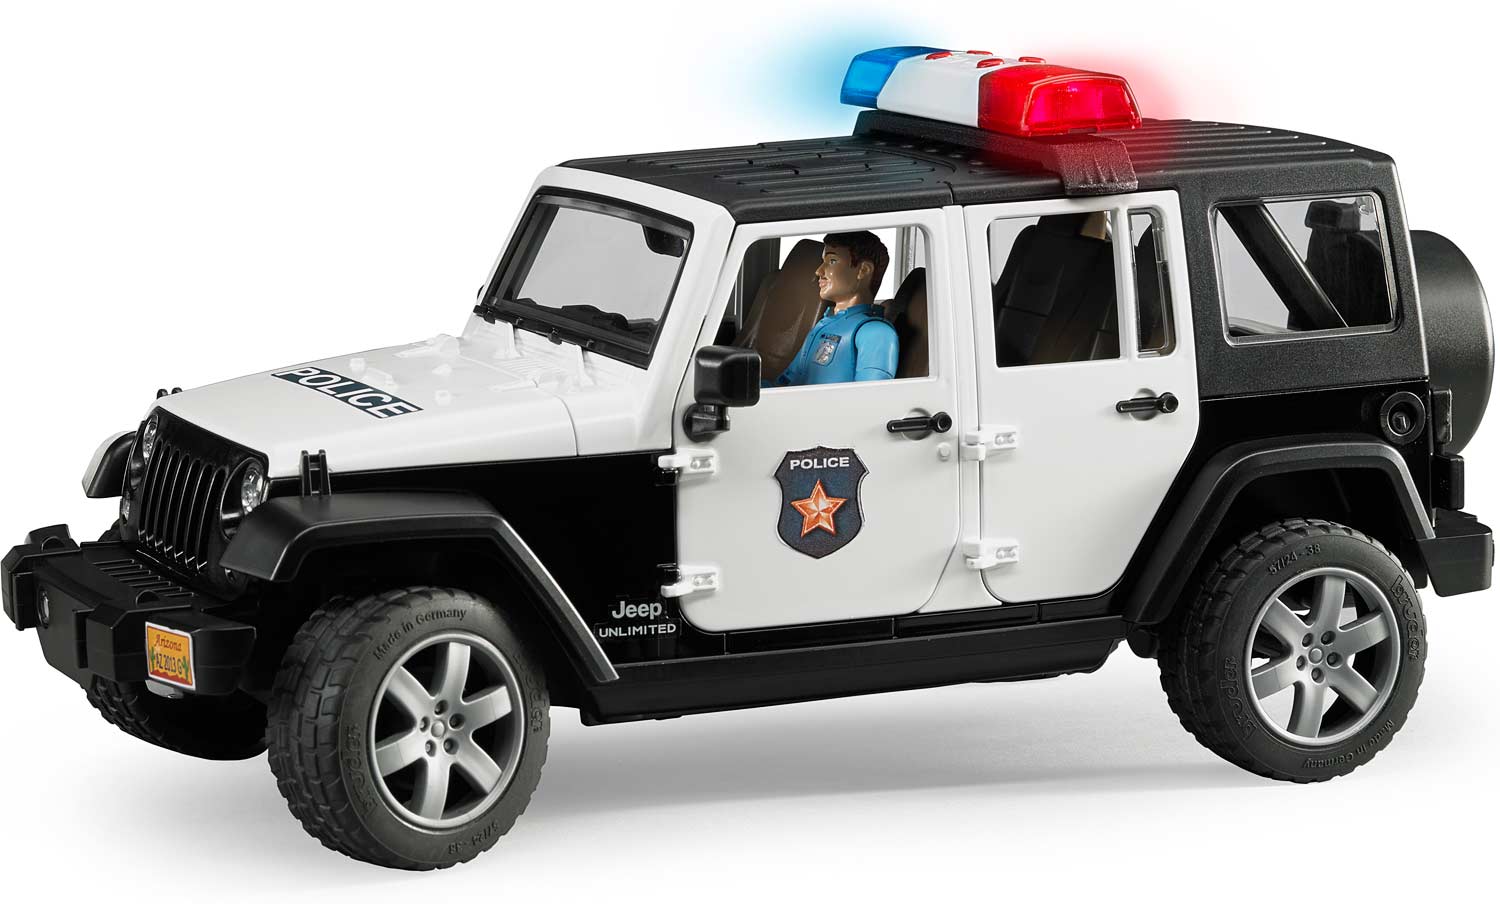 Jeep Rubicon Police Car - A Child's Delight